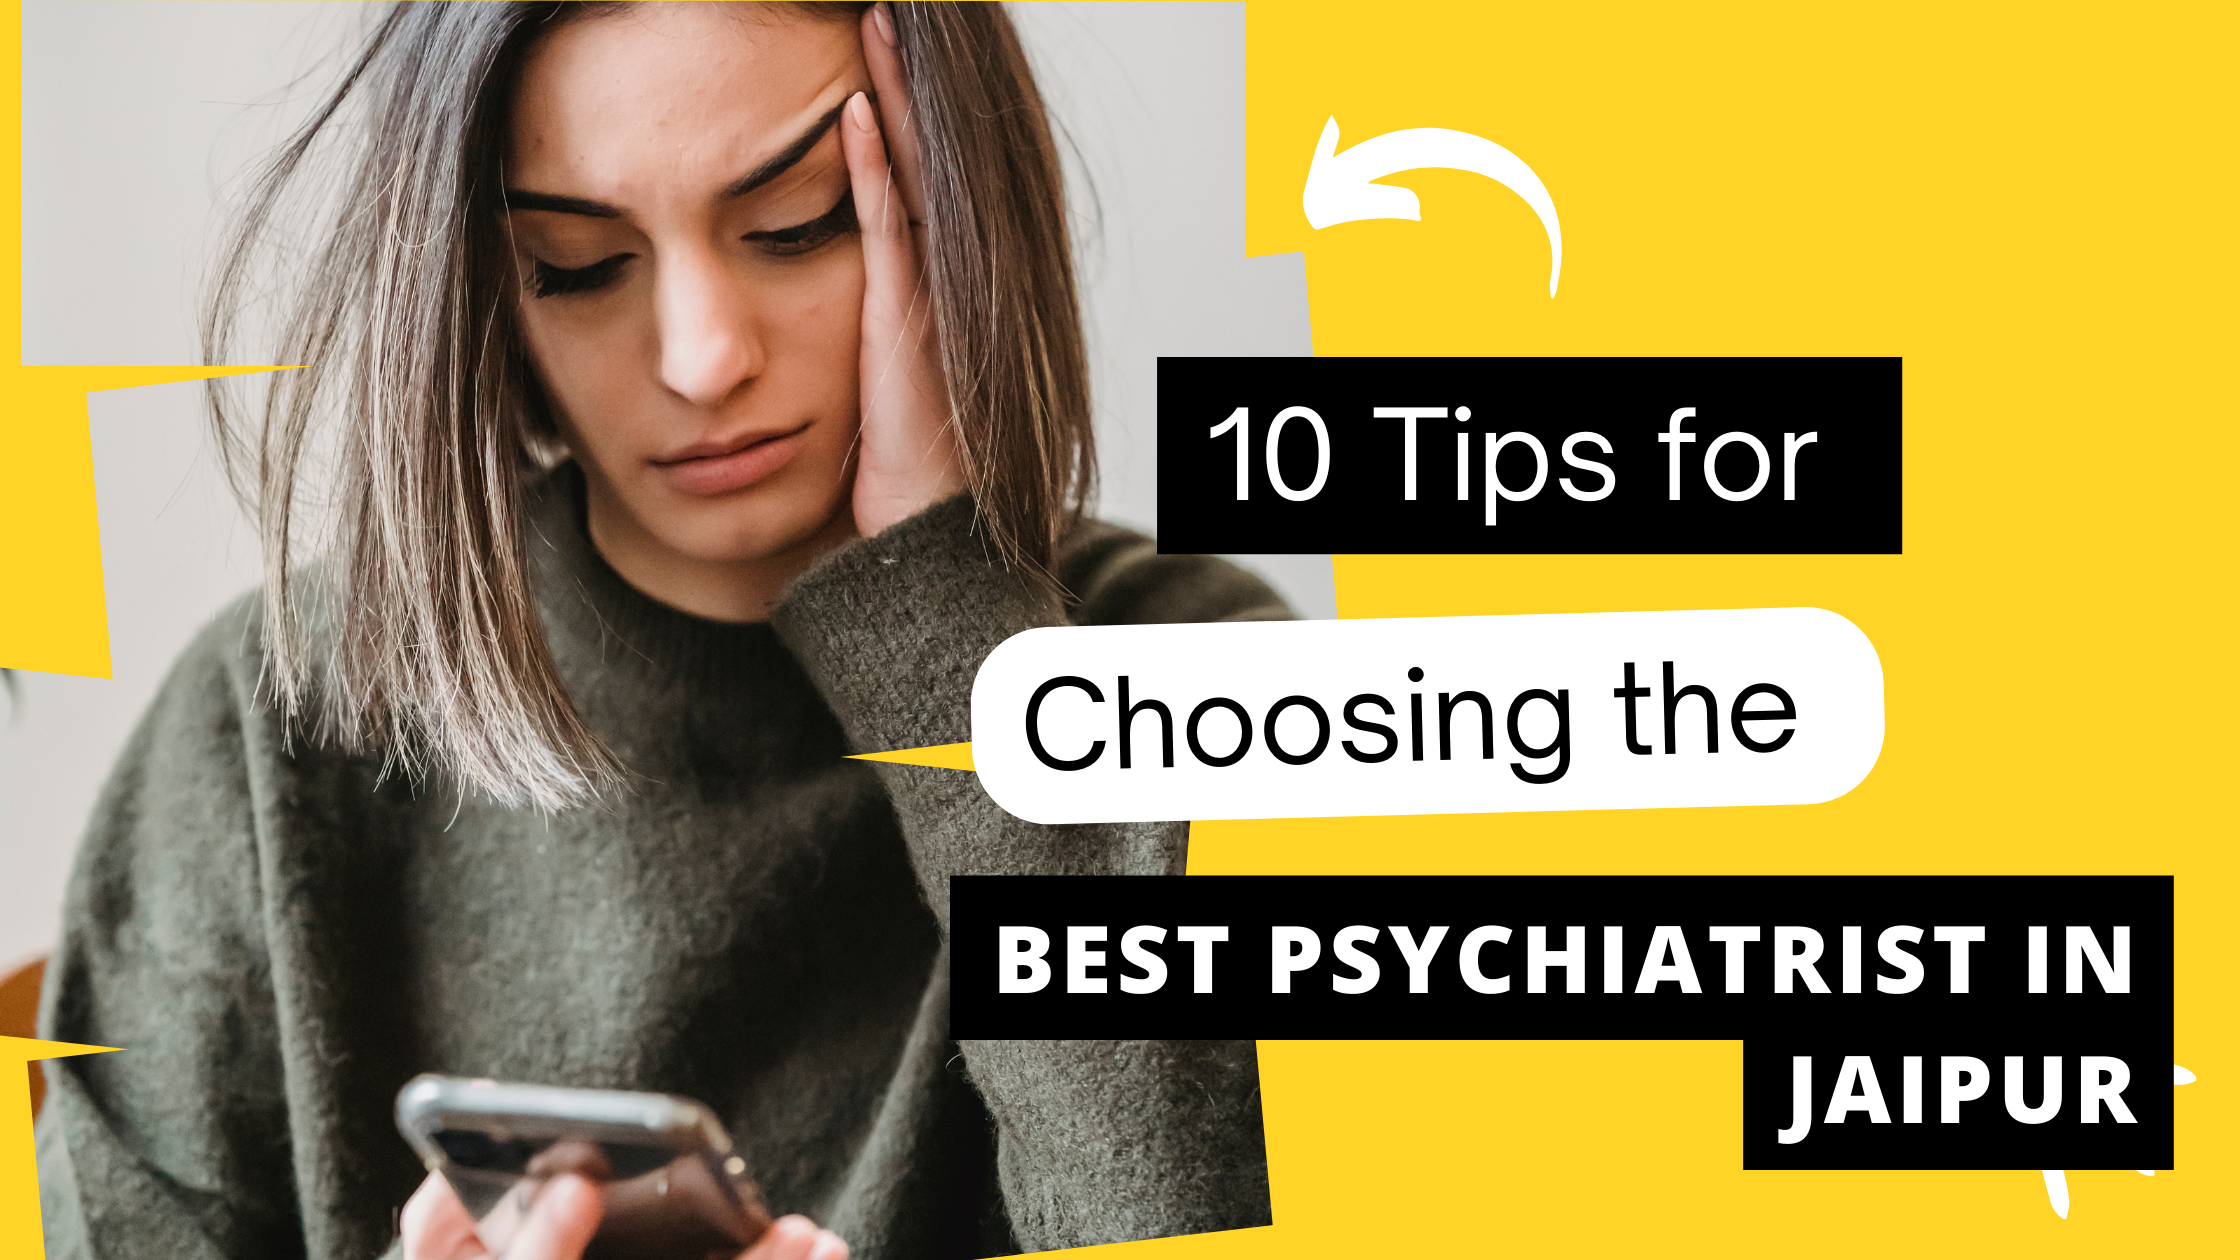 10 Tips for Choosing the Best Psychiatrist in Jaipur